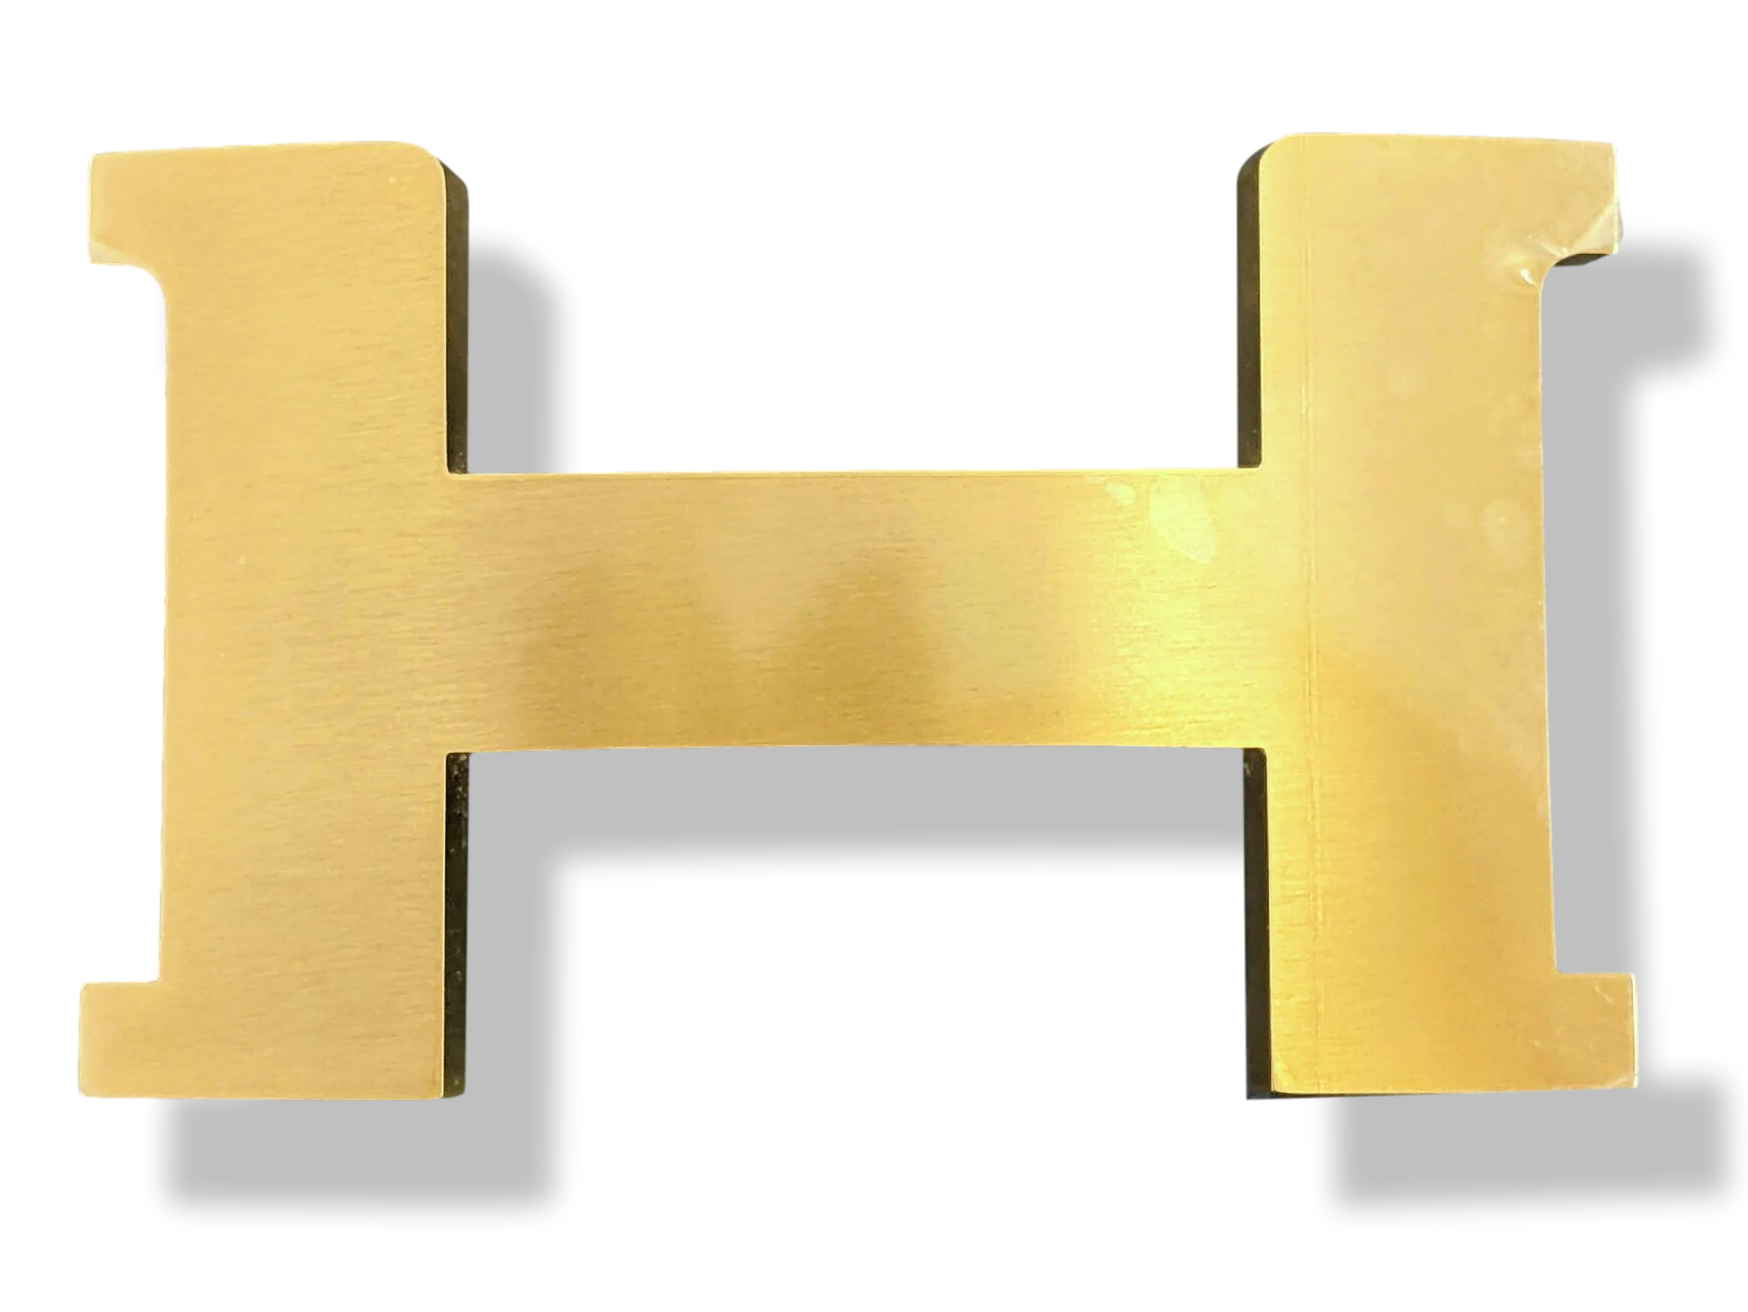 Hermès Constance belt buckle in shiny gold metal, new condition! Golden  Steel ref.99685 - Joli Closet